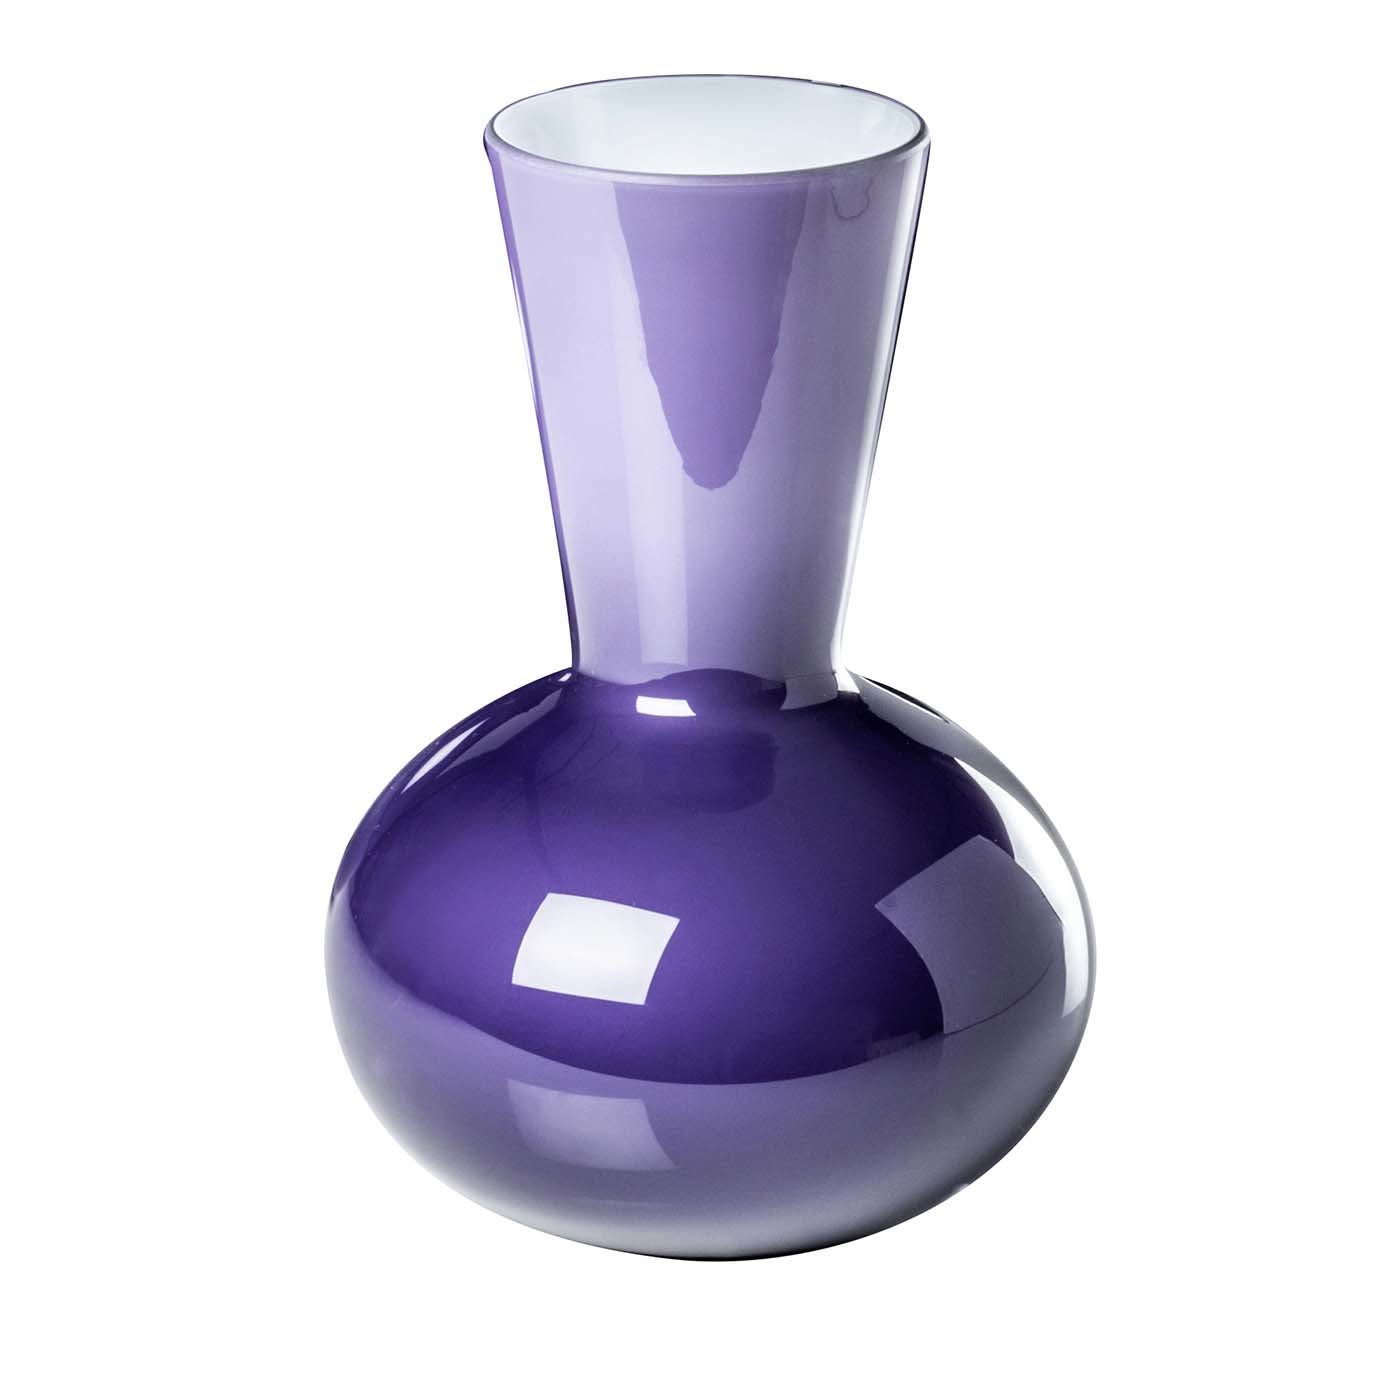 Idria Purple Vase by Paolo Venini - Venini